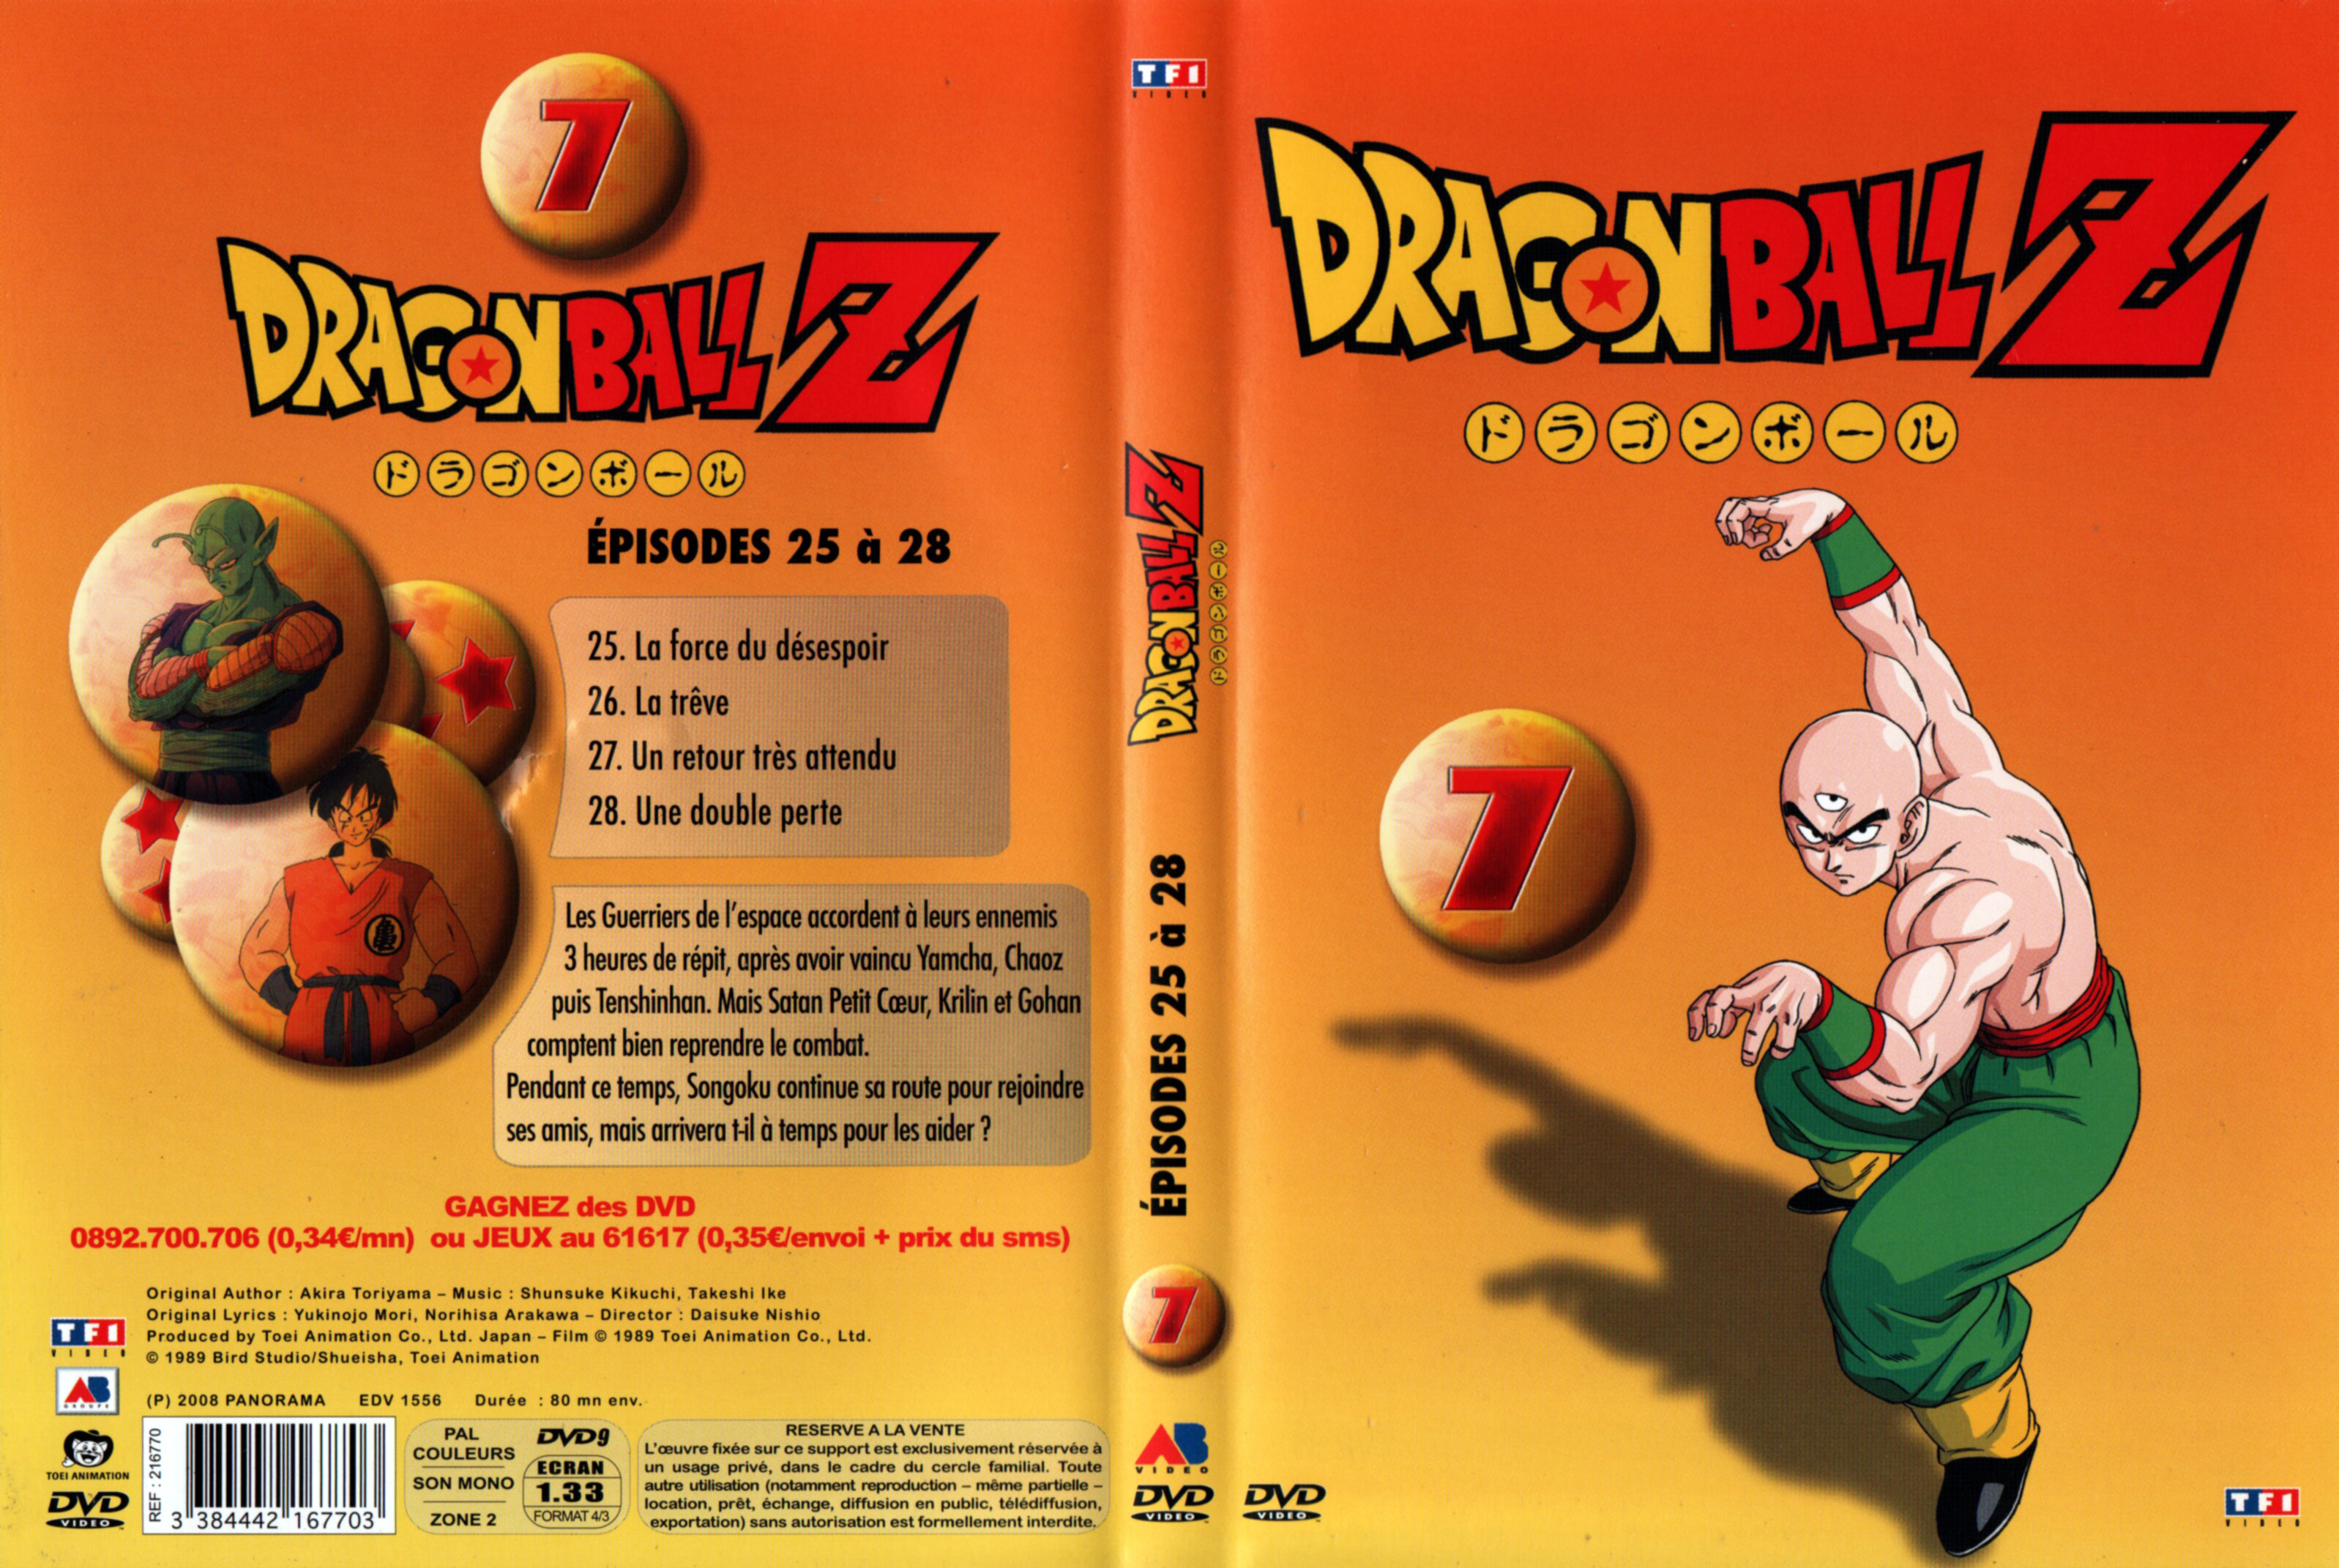 Jaquette DVD Dragon Ball Z vol 07 v2